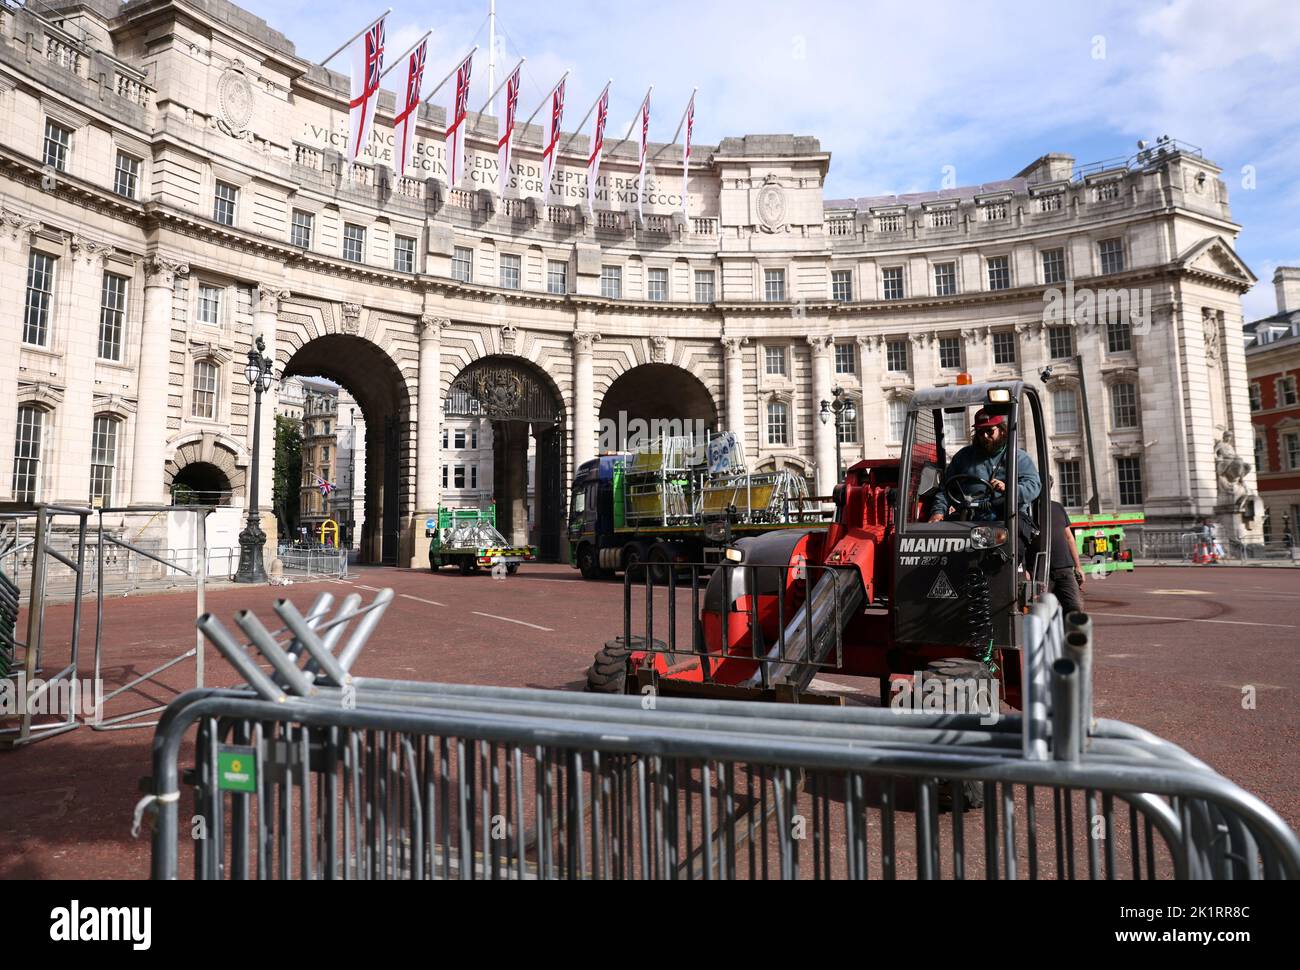 Le recinzioni vengono rimosse dal Mall, a seguito dei funerali della regina Elisabetta britannica, a Londra, Gran Bretagna 20 settembre 2022. REUTERS/Tom Nicholson Foto Stock